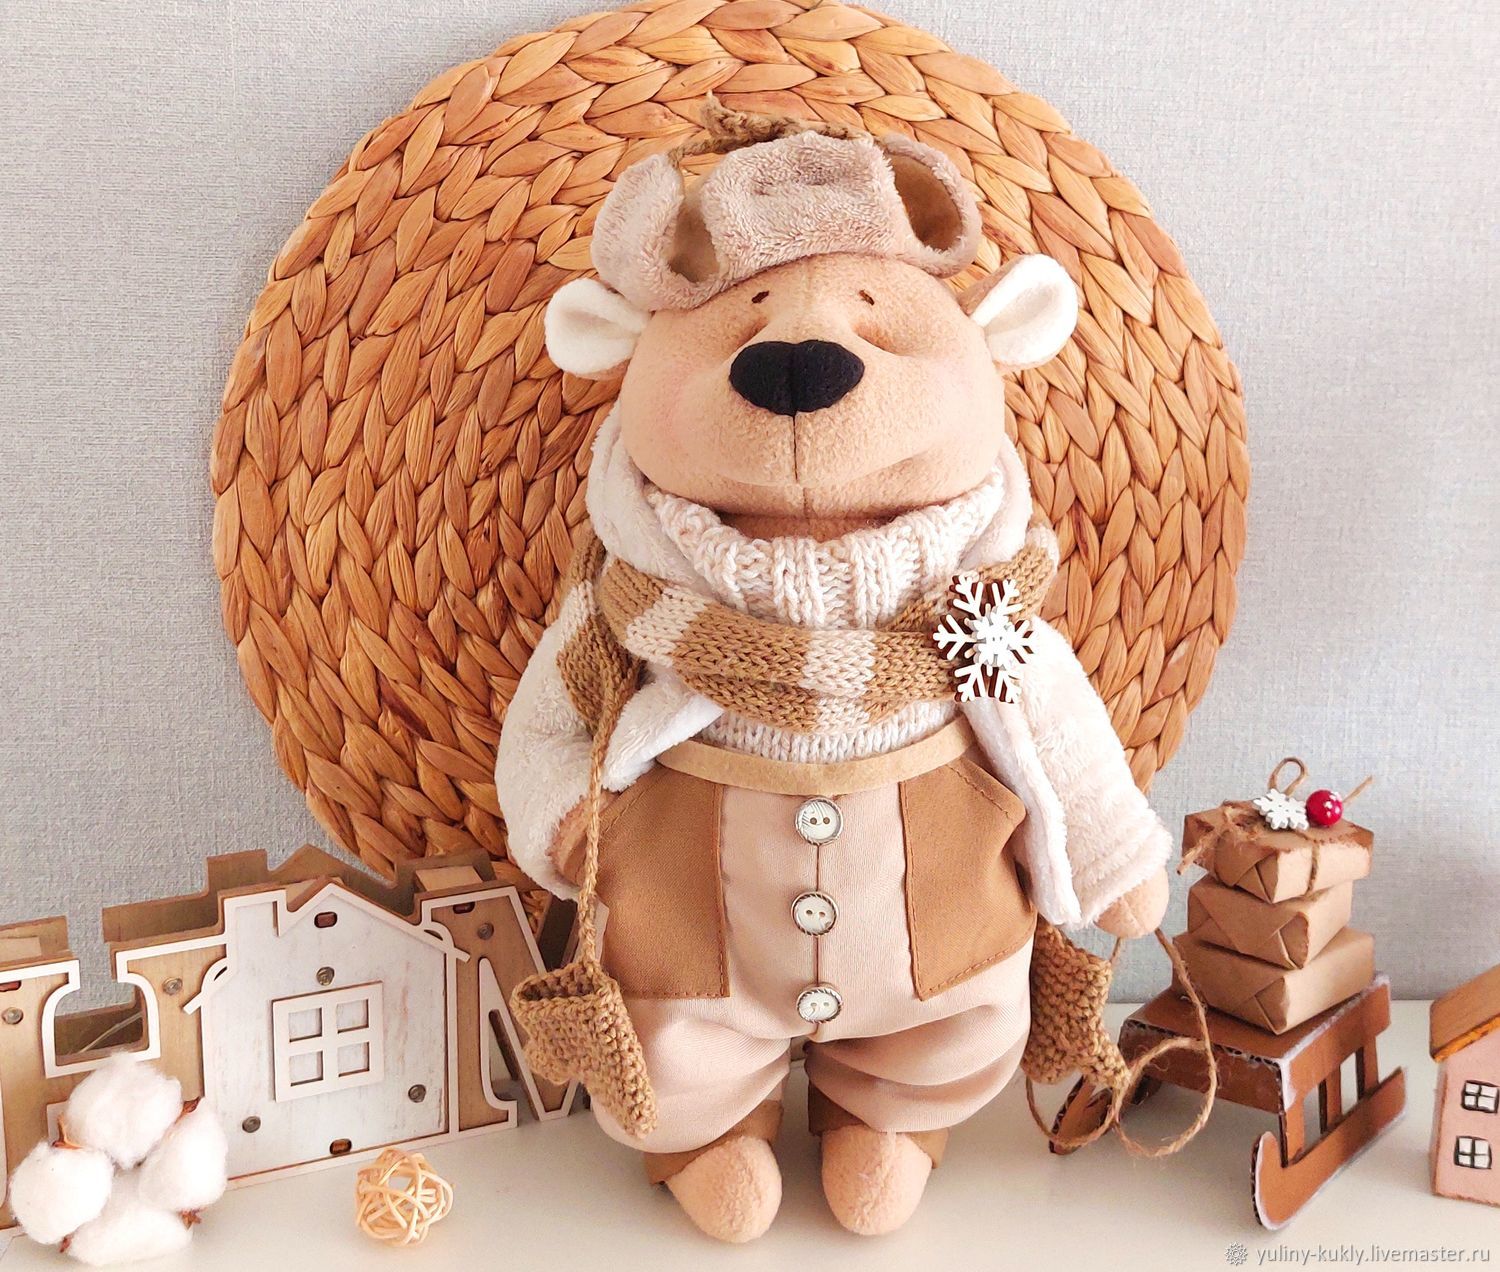 Купить мягкие игрушки медведи в интернет магазине эталон62.рф